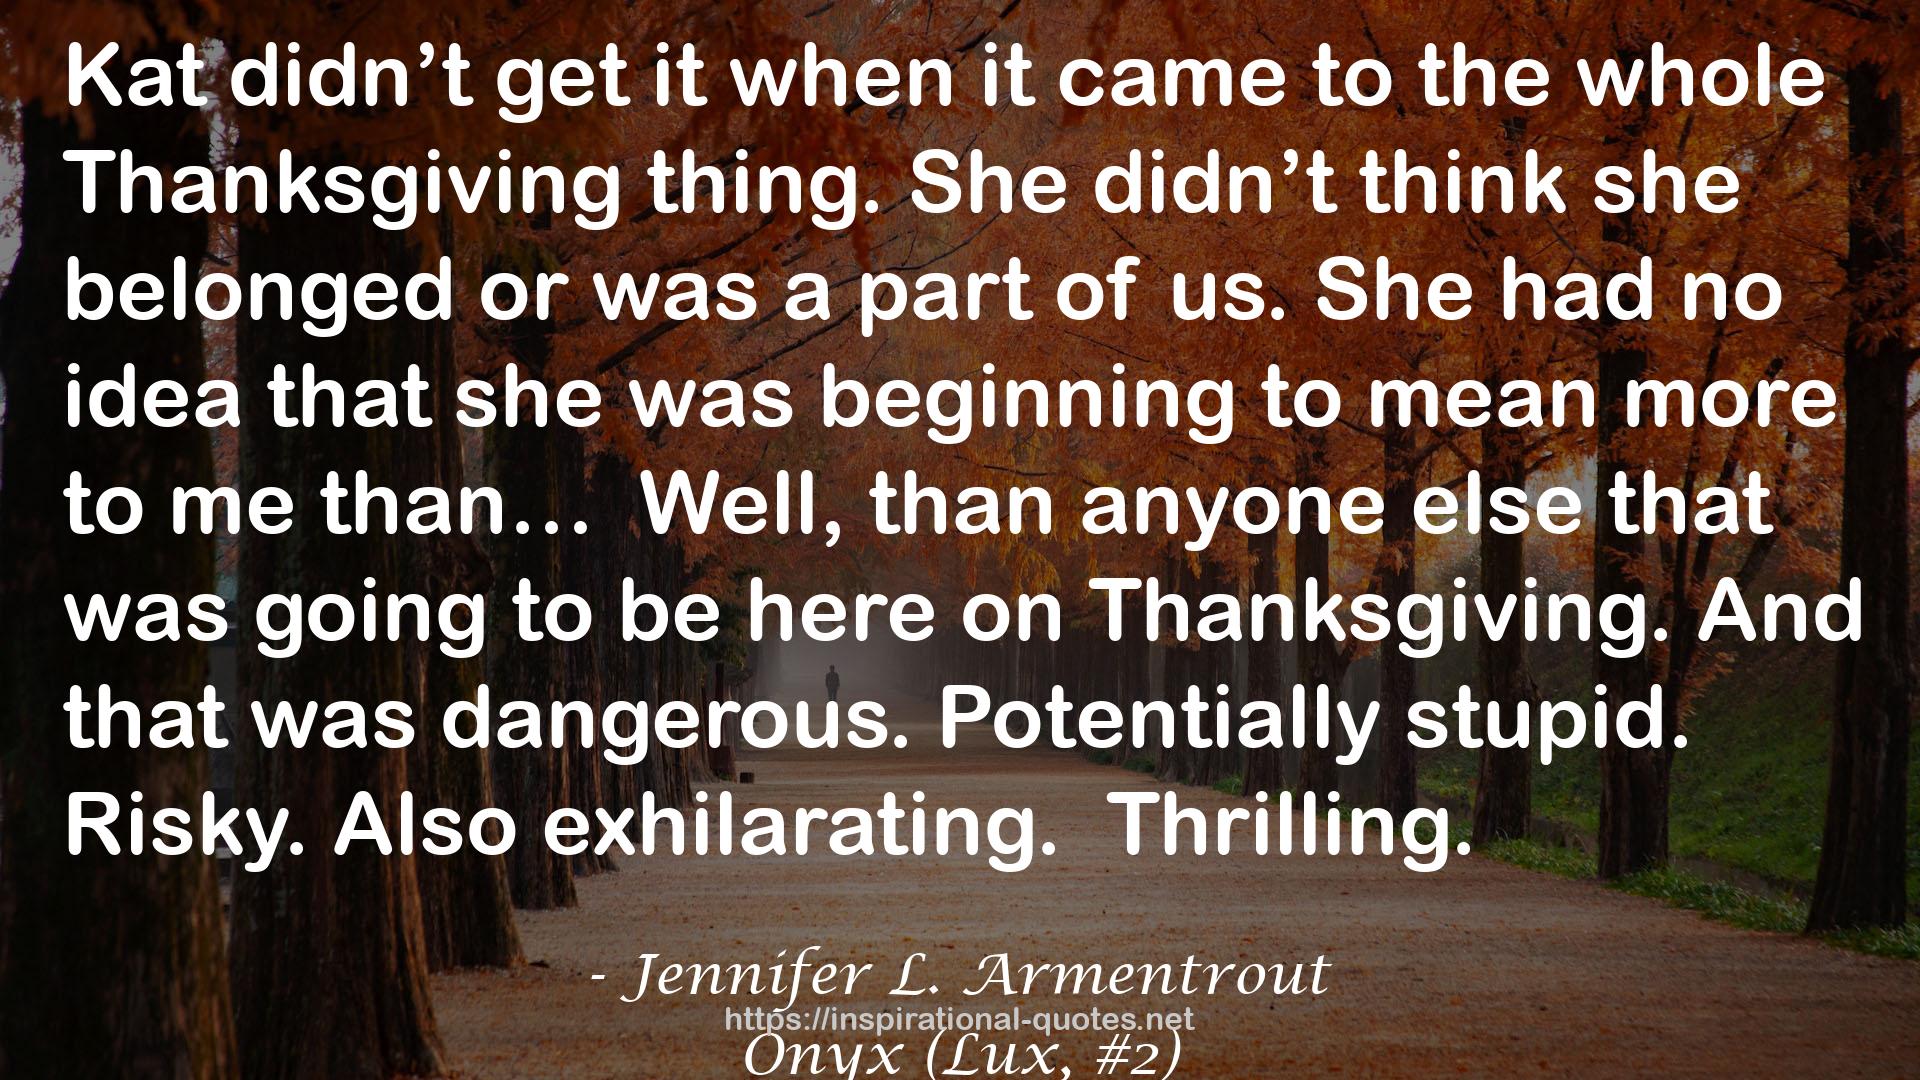 Jennifer L. Armentrout QUOTES